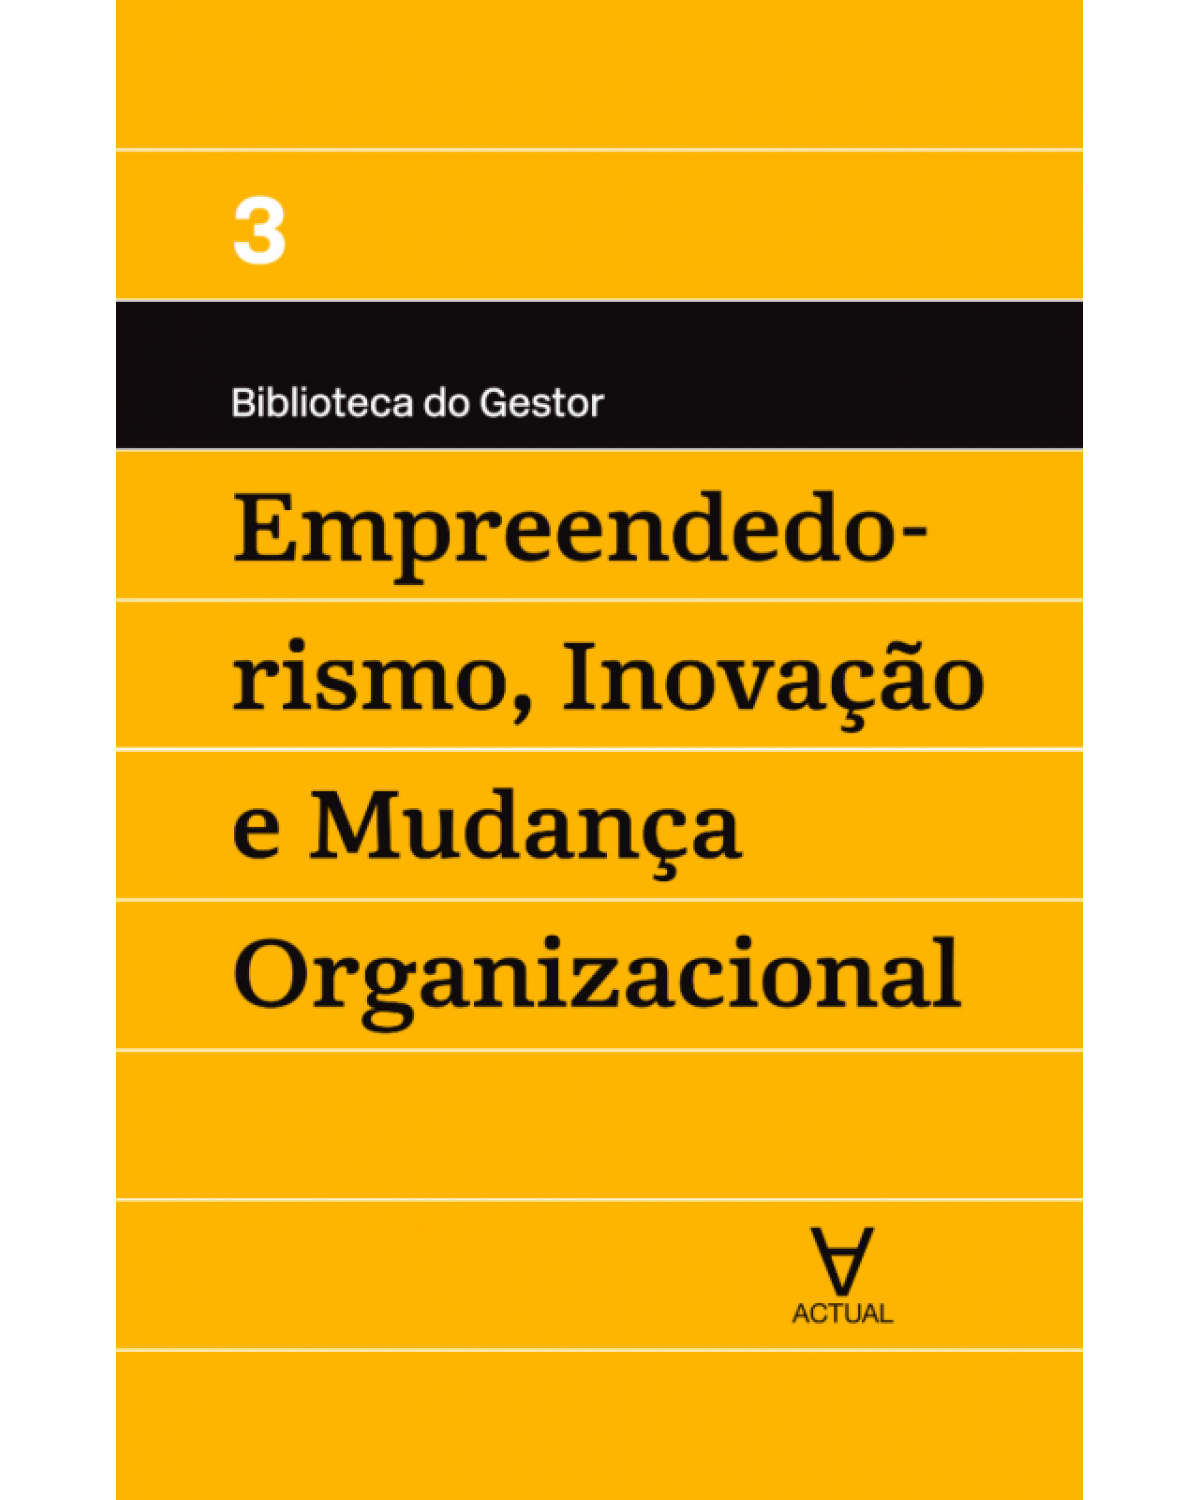 Empreendedorismo, inovação e mudança organizacional - Volume 3:  - 1ª Edição | 2017